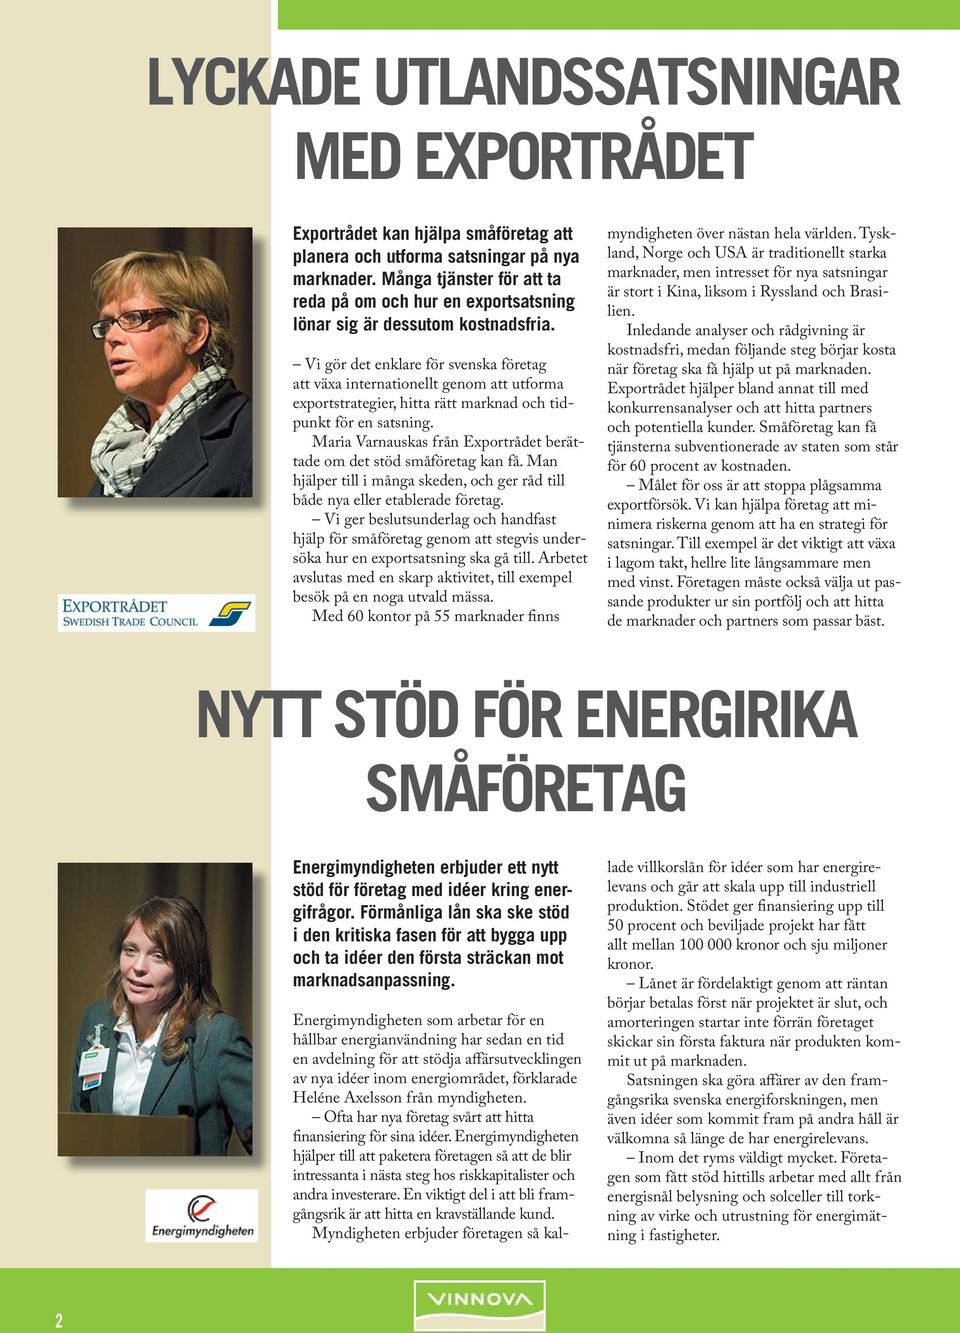 Vi gör det enklare för svenska företag att växa internationellt genom att utforma exportstrategier, hitta rätt marknad och tidpunkt för en satsning.